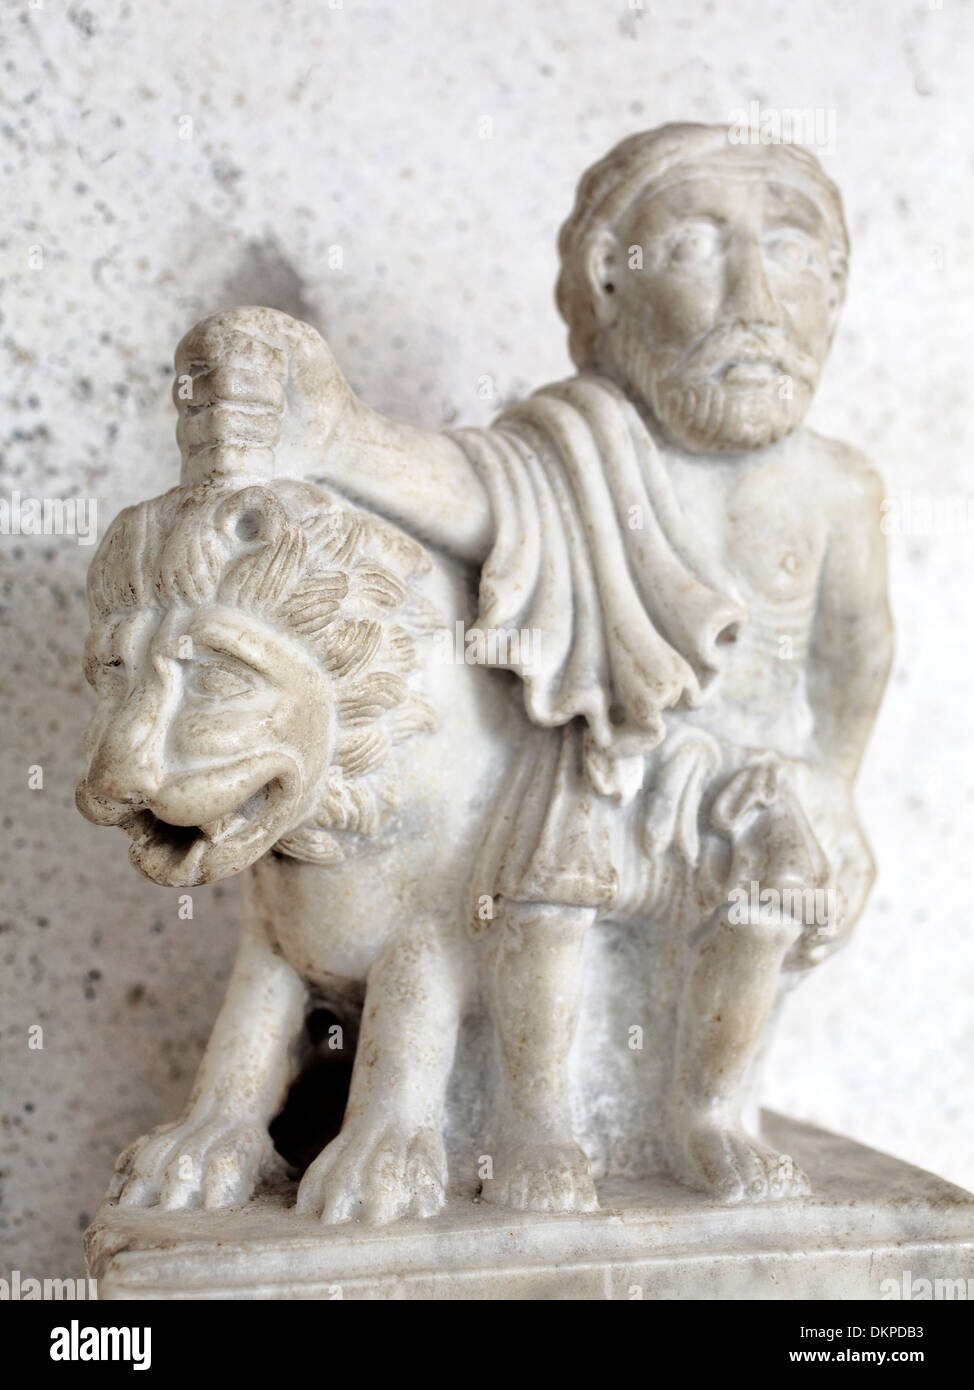 Sculpture dans le cloître de la cathédrale, Côte Amalfitaine, Campanie, Italie Banque D'Images